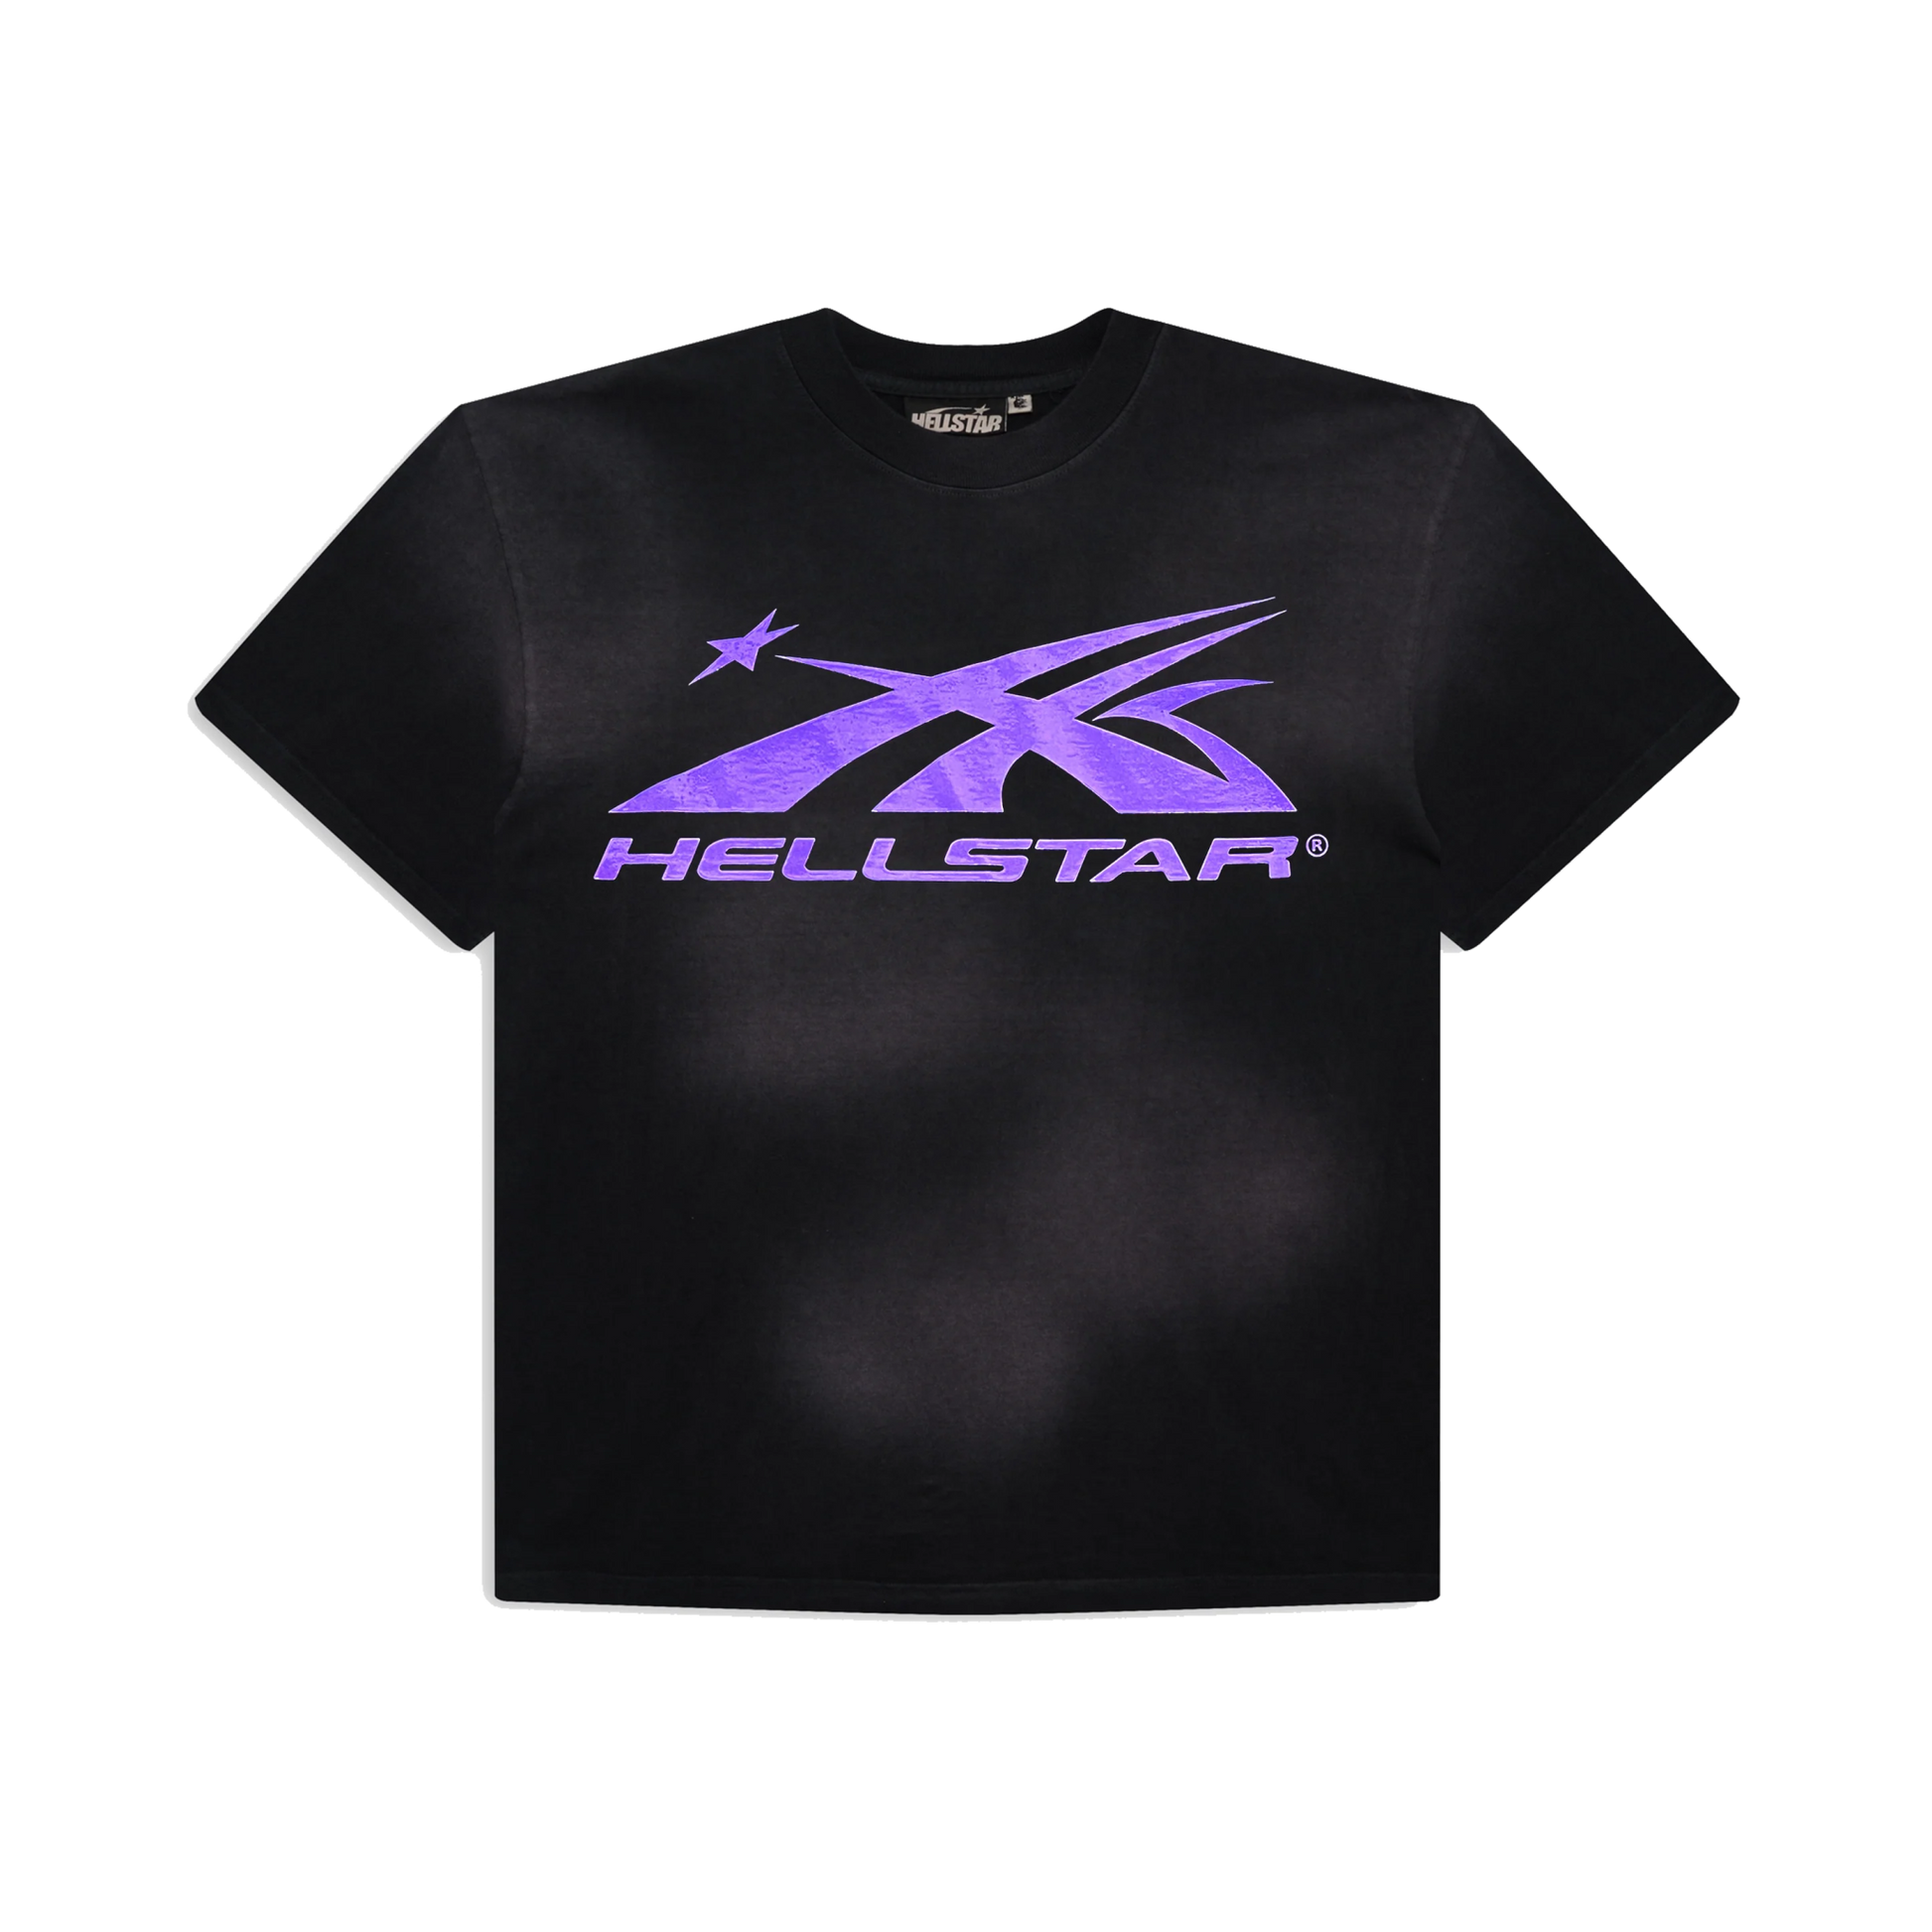 Hellstar Sports Classic T-Shirt Purple - Sneakersbe Sneakers Sale Online